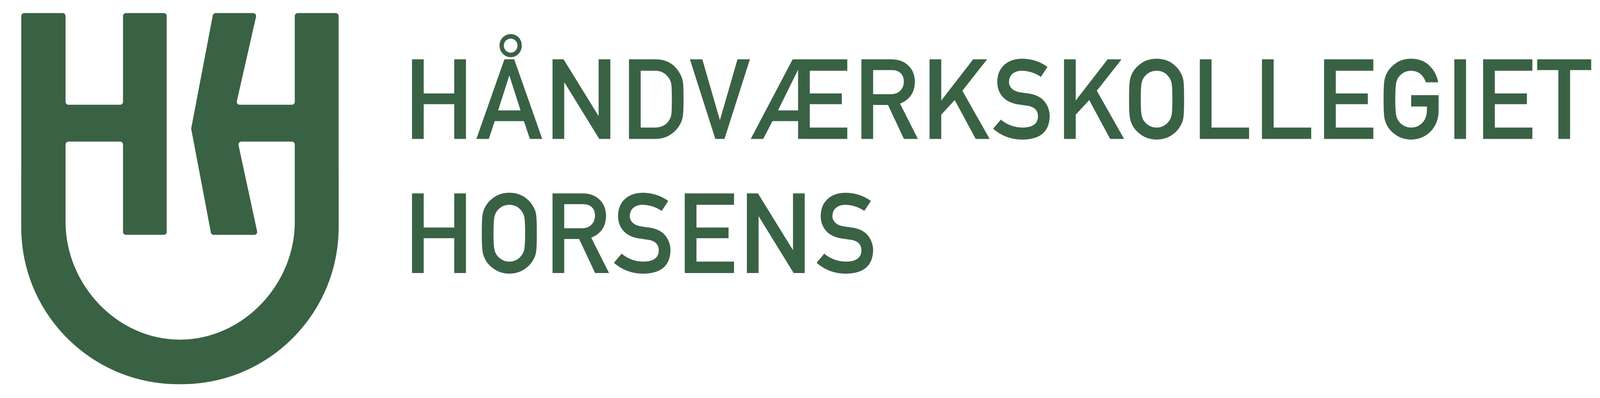 horsens_logo_horisontalt_green_cmyk